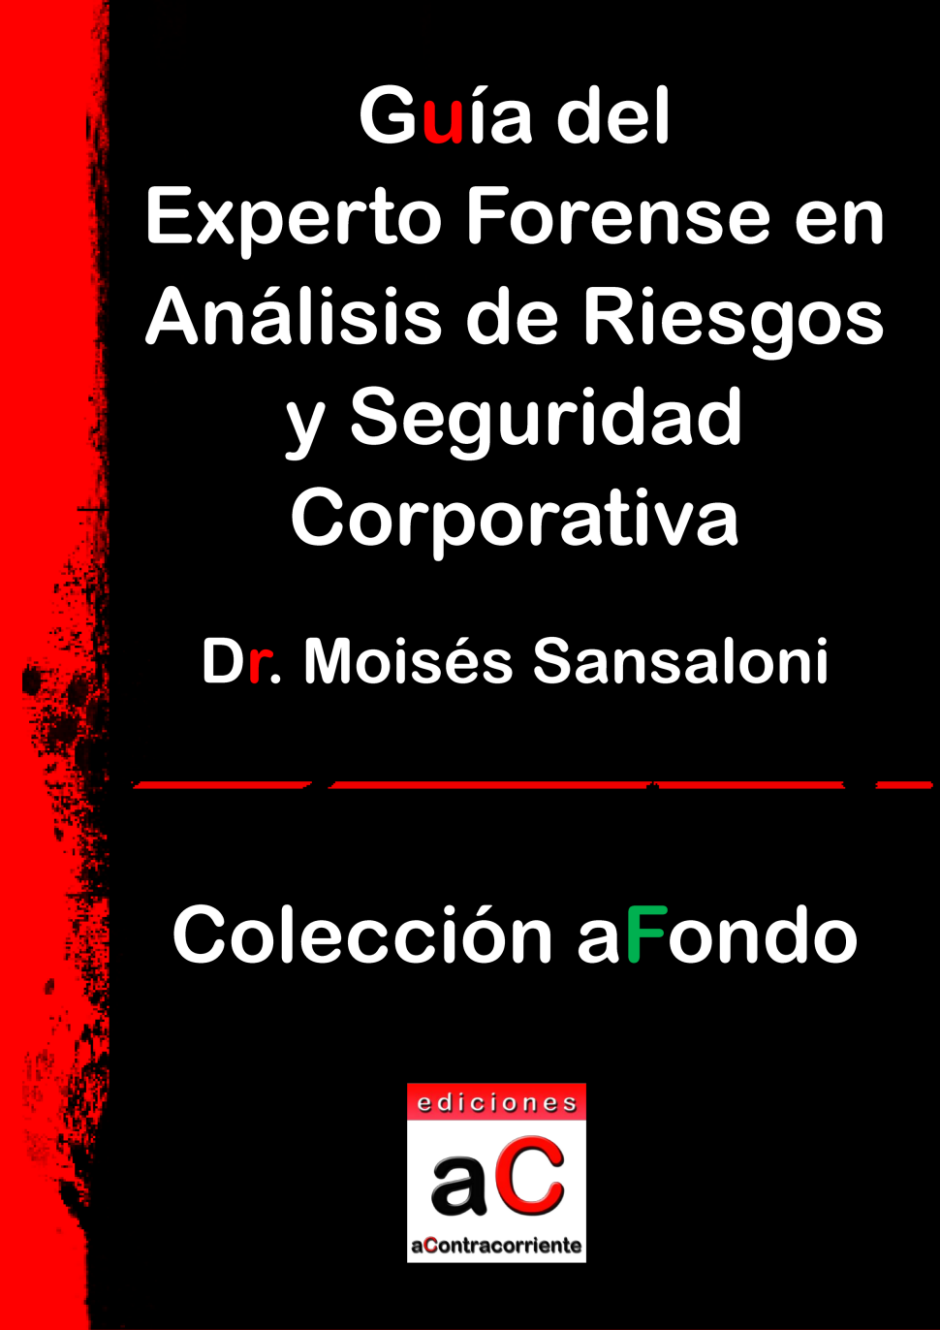 Gua del experto forense en anlisis de riesgos y seguridad corporativa, Ediciones aContracorriente